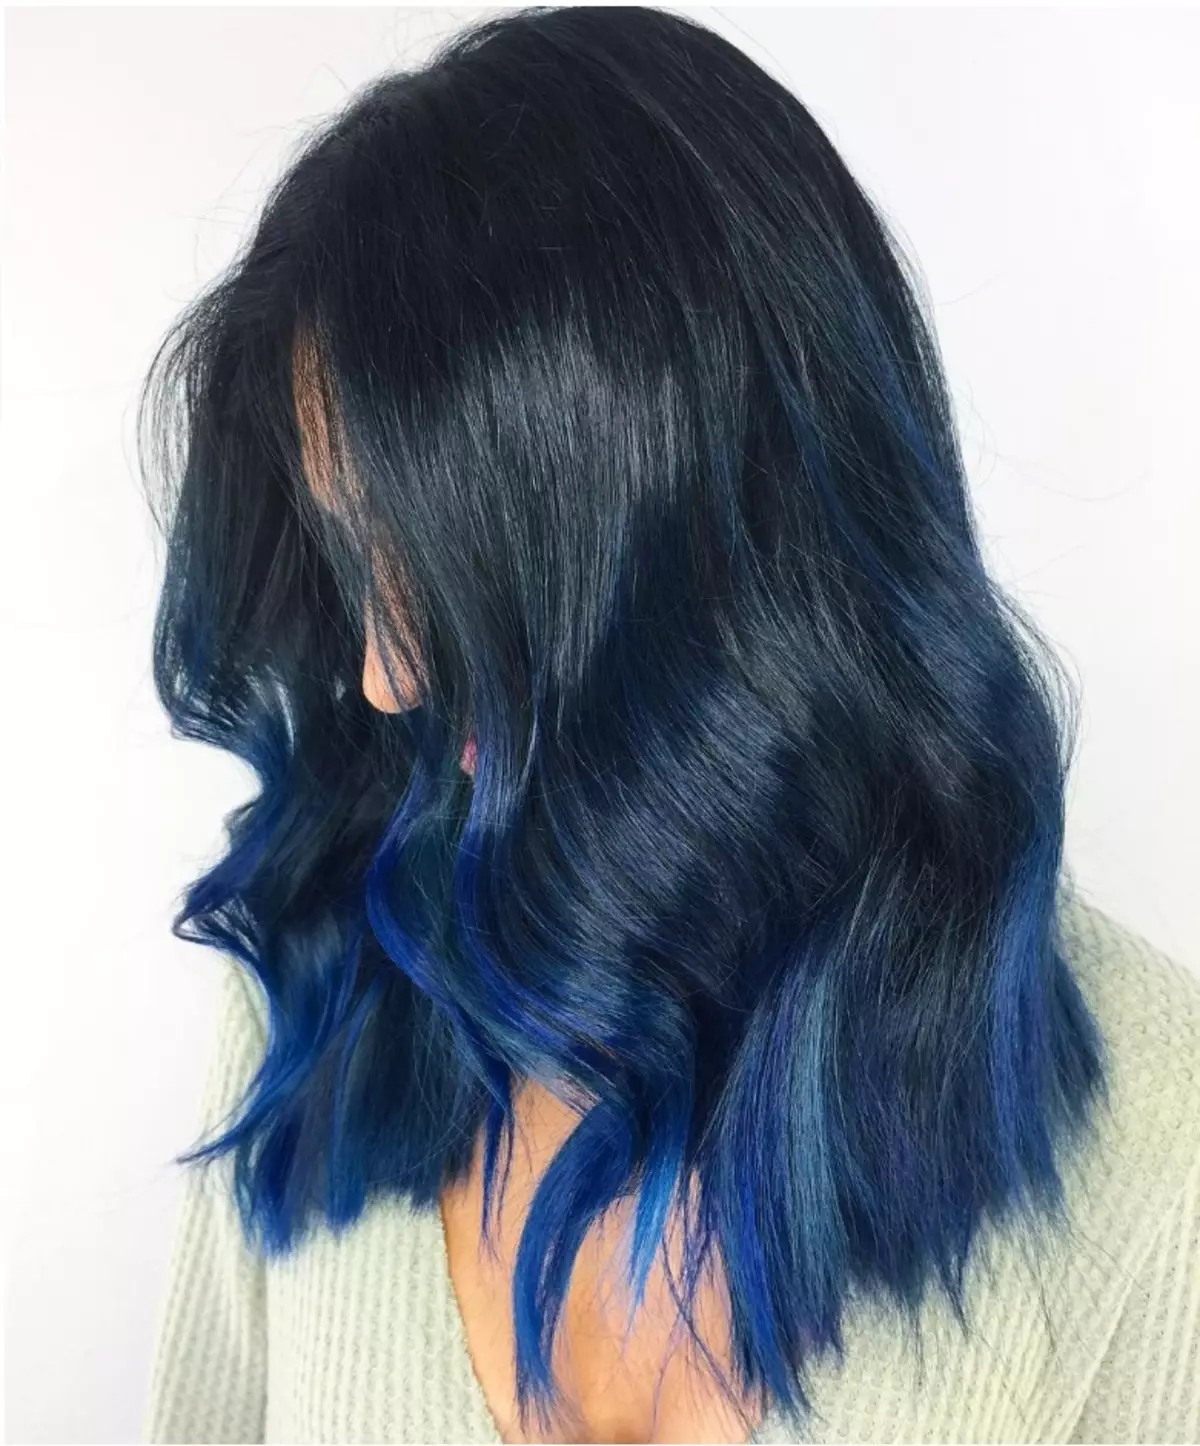 Mėlyna-juoda plaukų spalva (45 nuotraukos): dažymo kryptys ir plaukai galai su atspalviais su mėlyna juoda atranka. Kuris iš merginų yra tinkama spalva? 5156_3